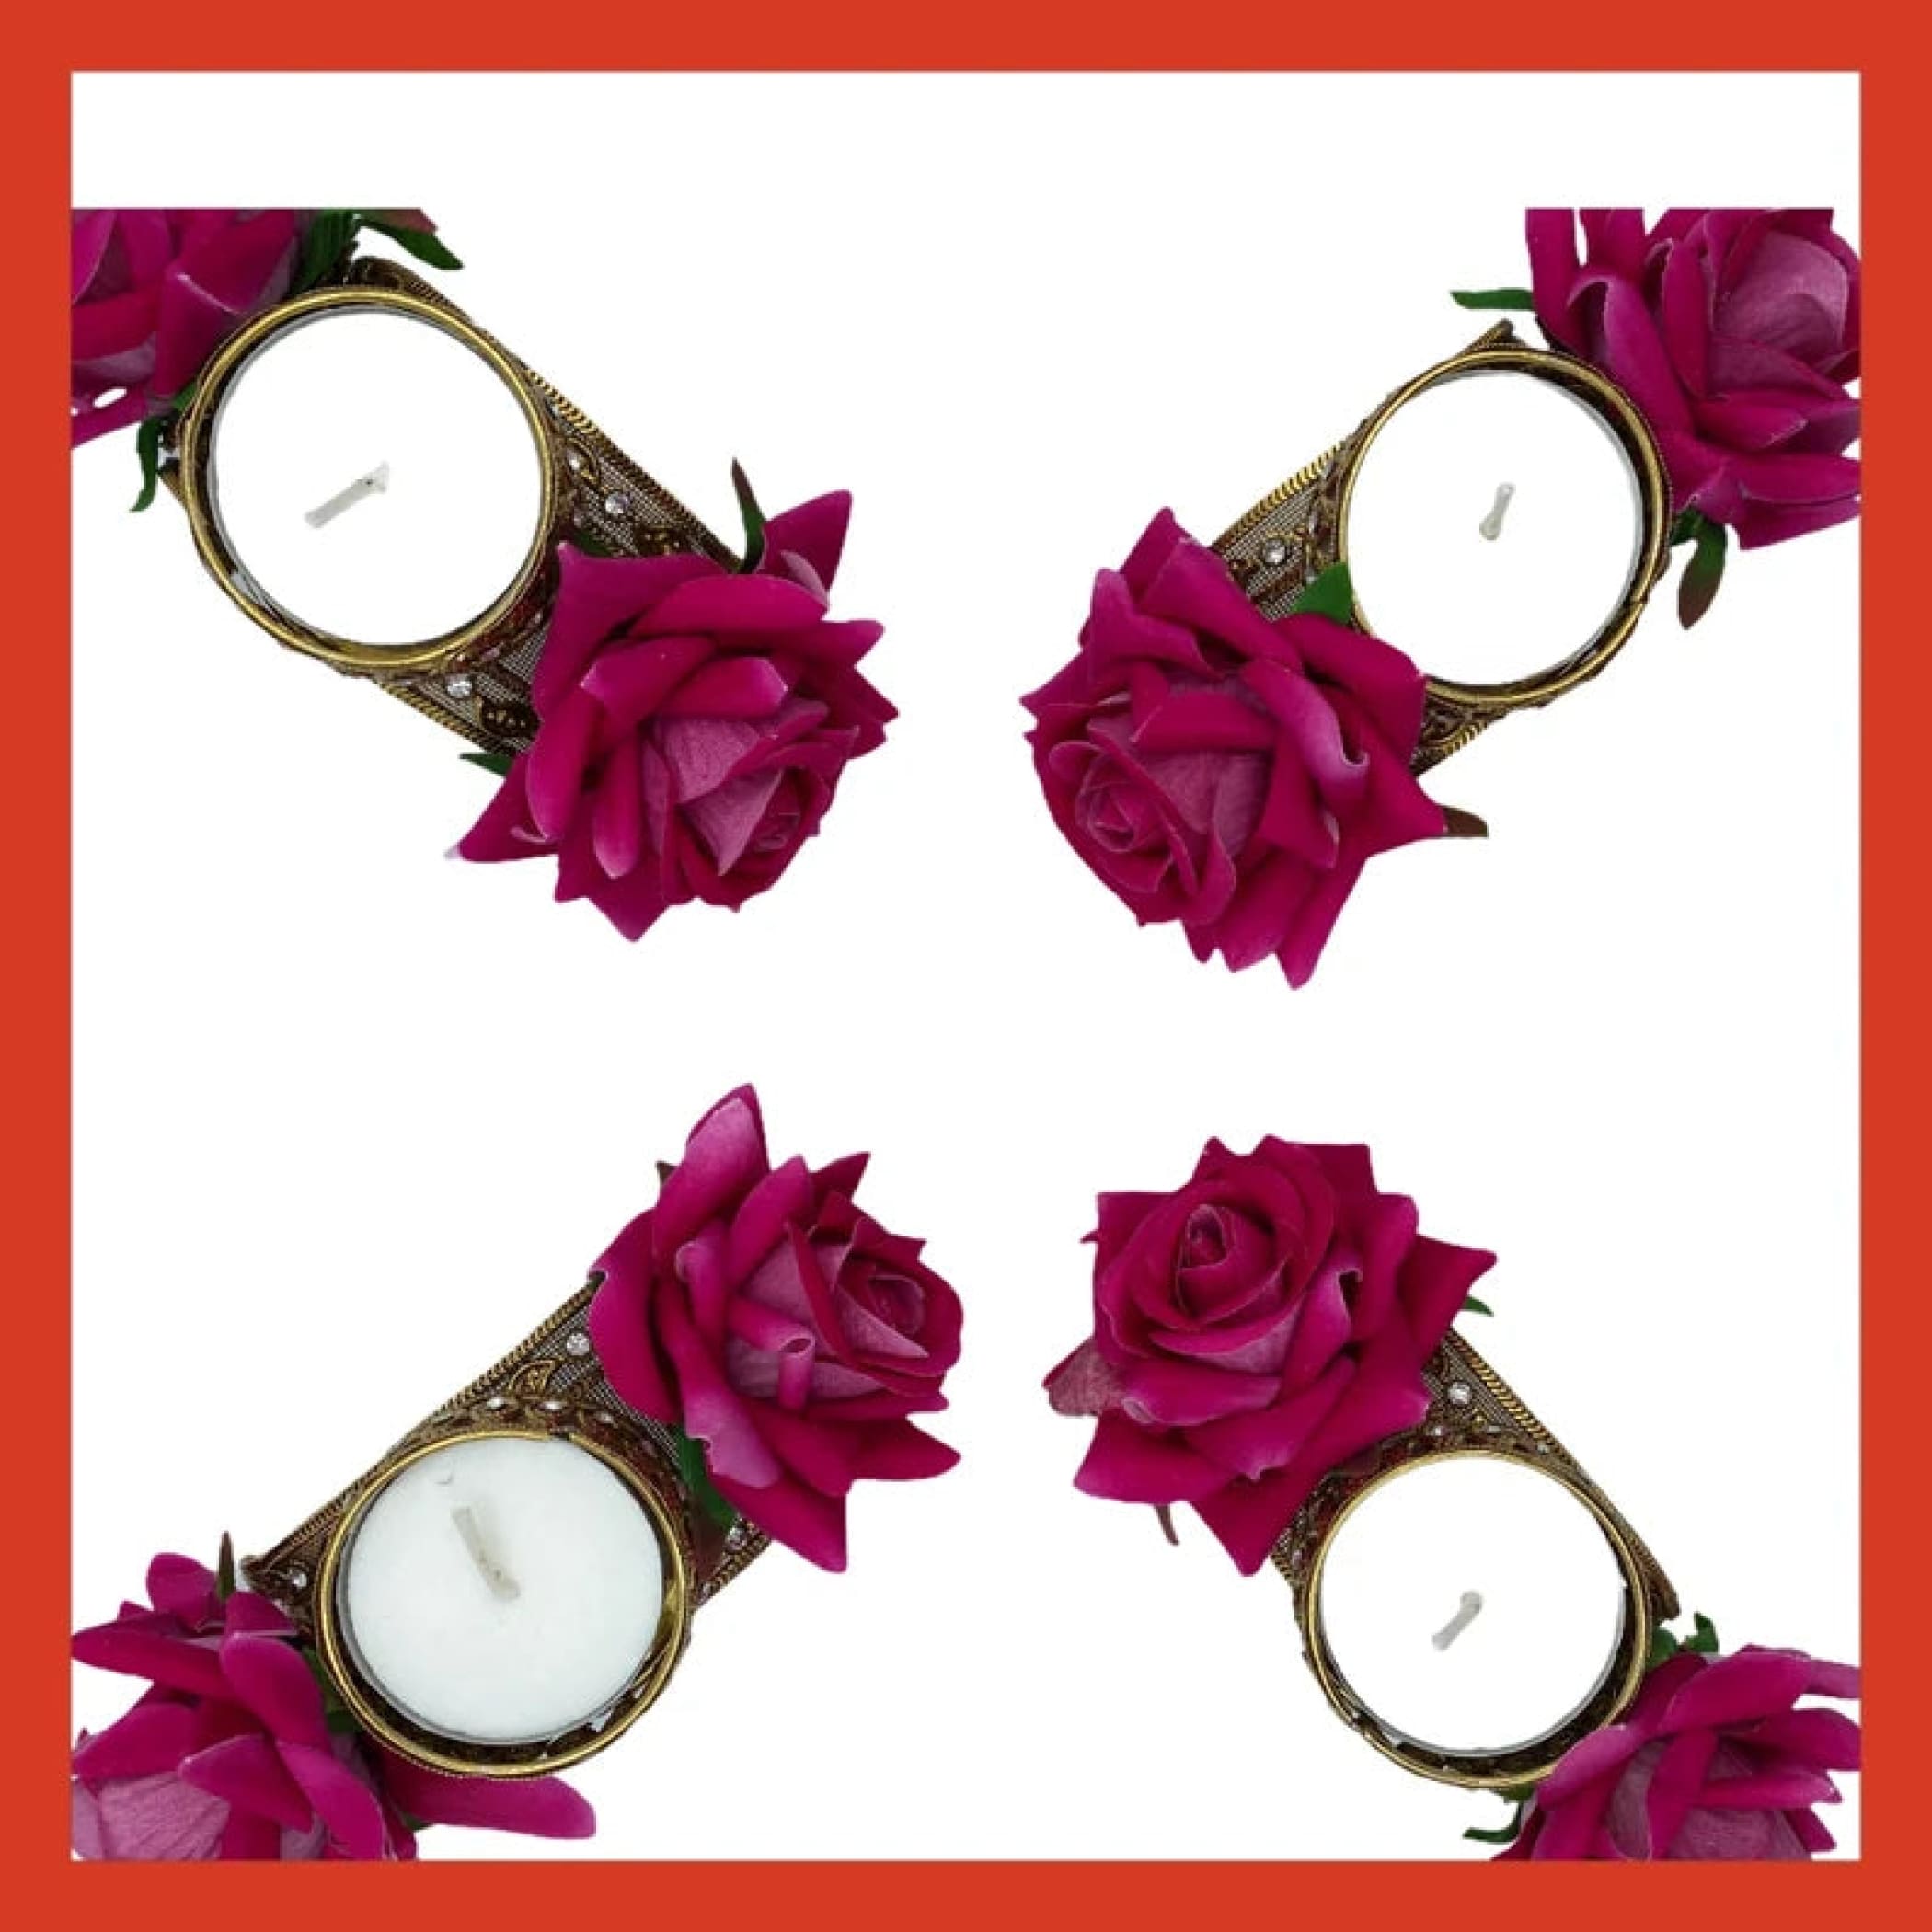 Rose Diwali Candle Holder Diya Decor Decoration Favors